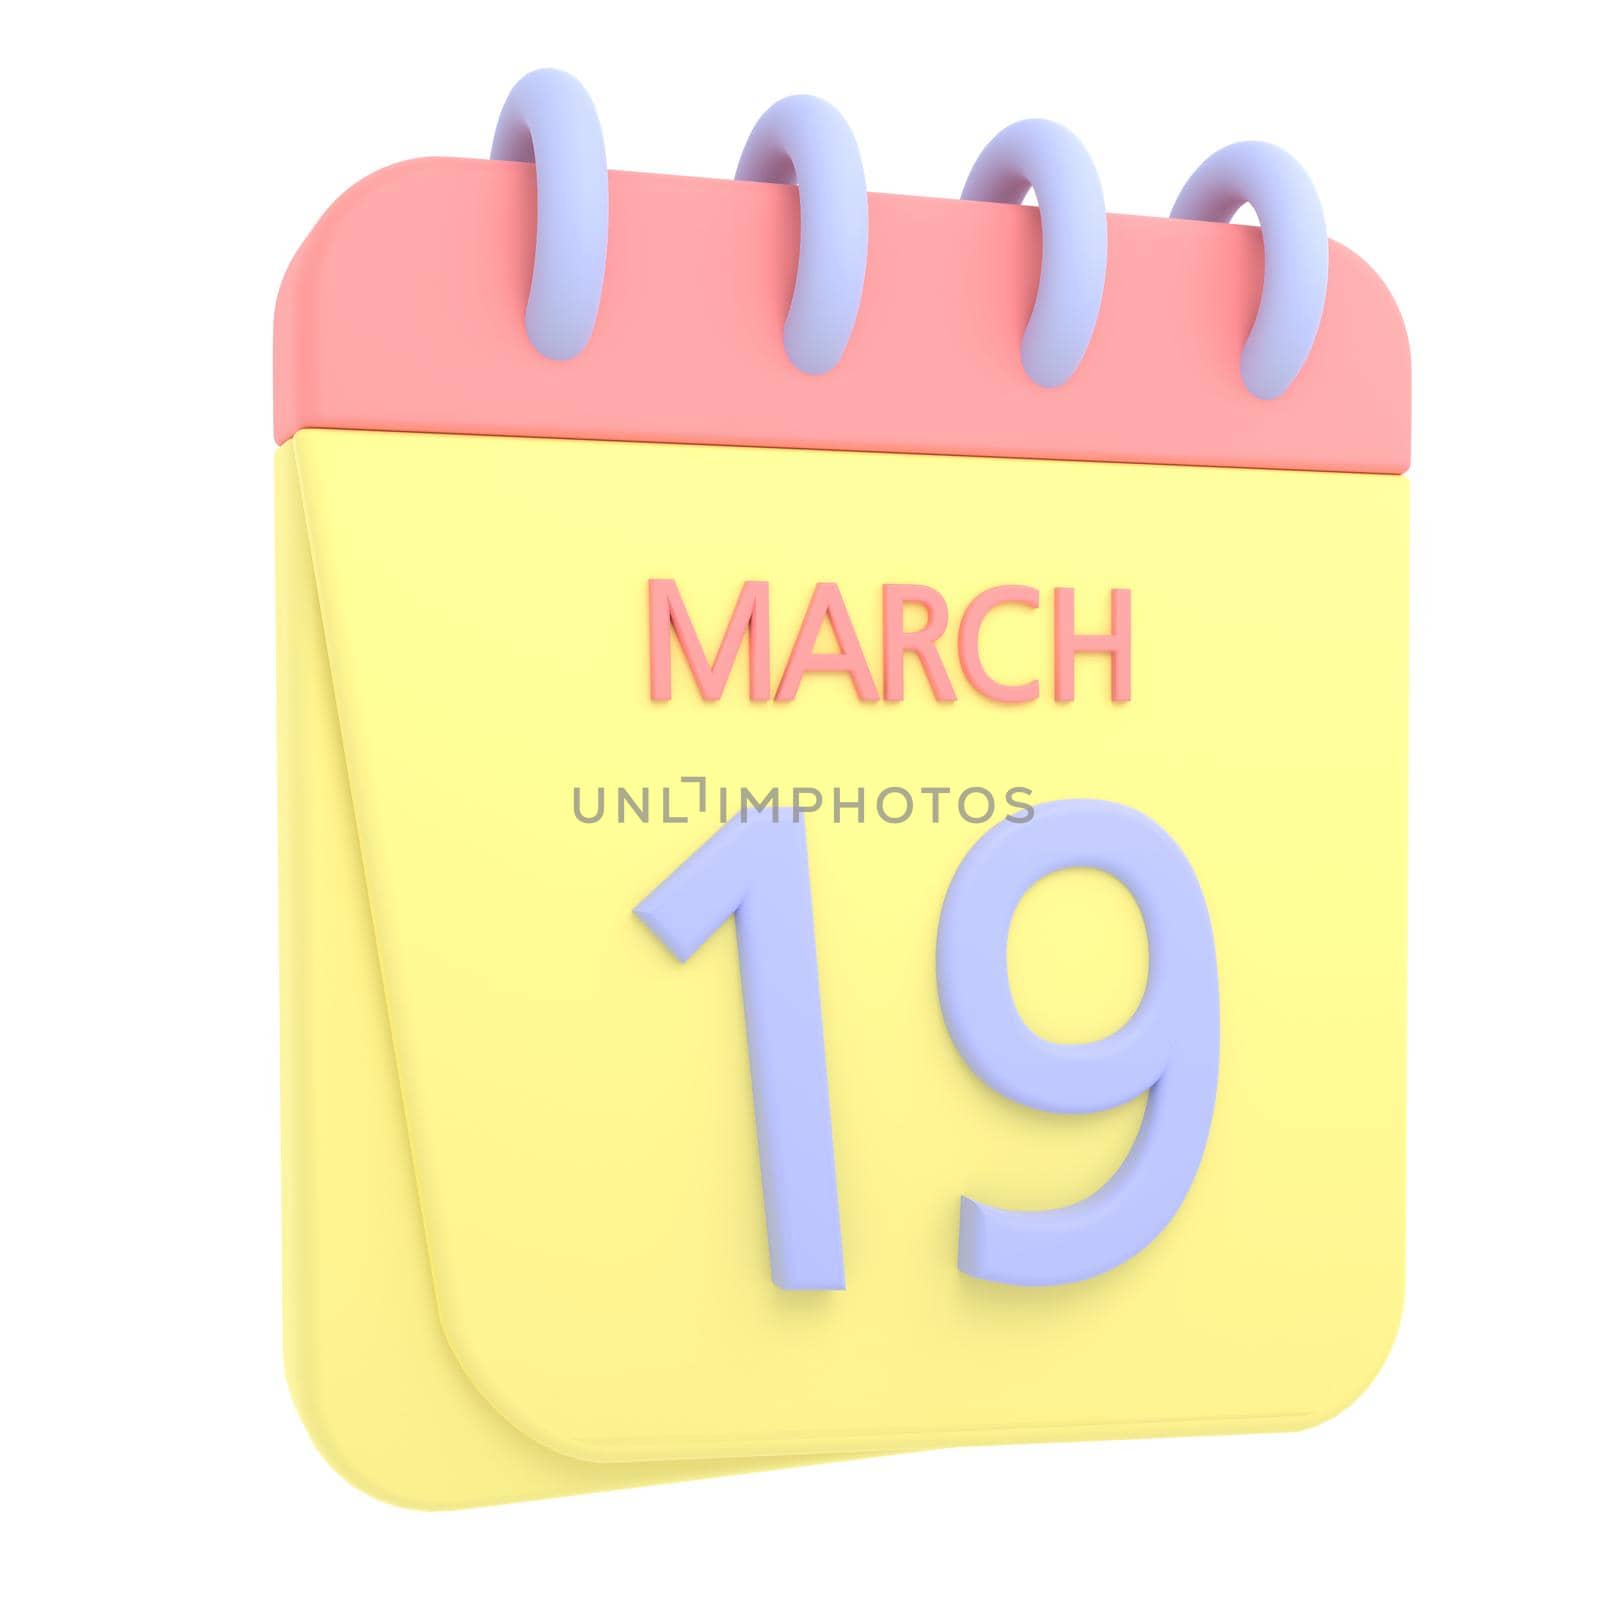 19th March 3D calendar icon by AnnaMarin